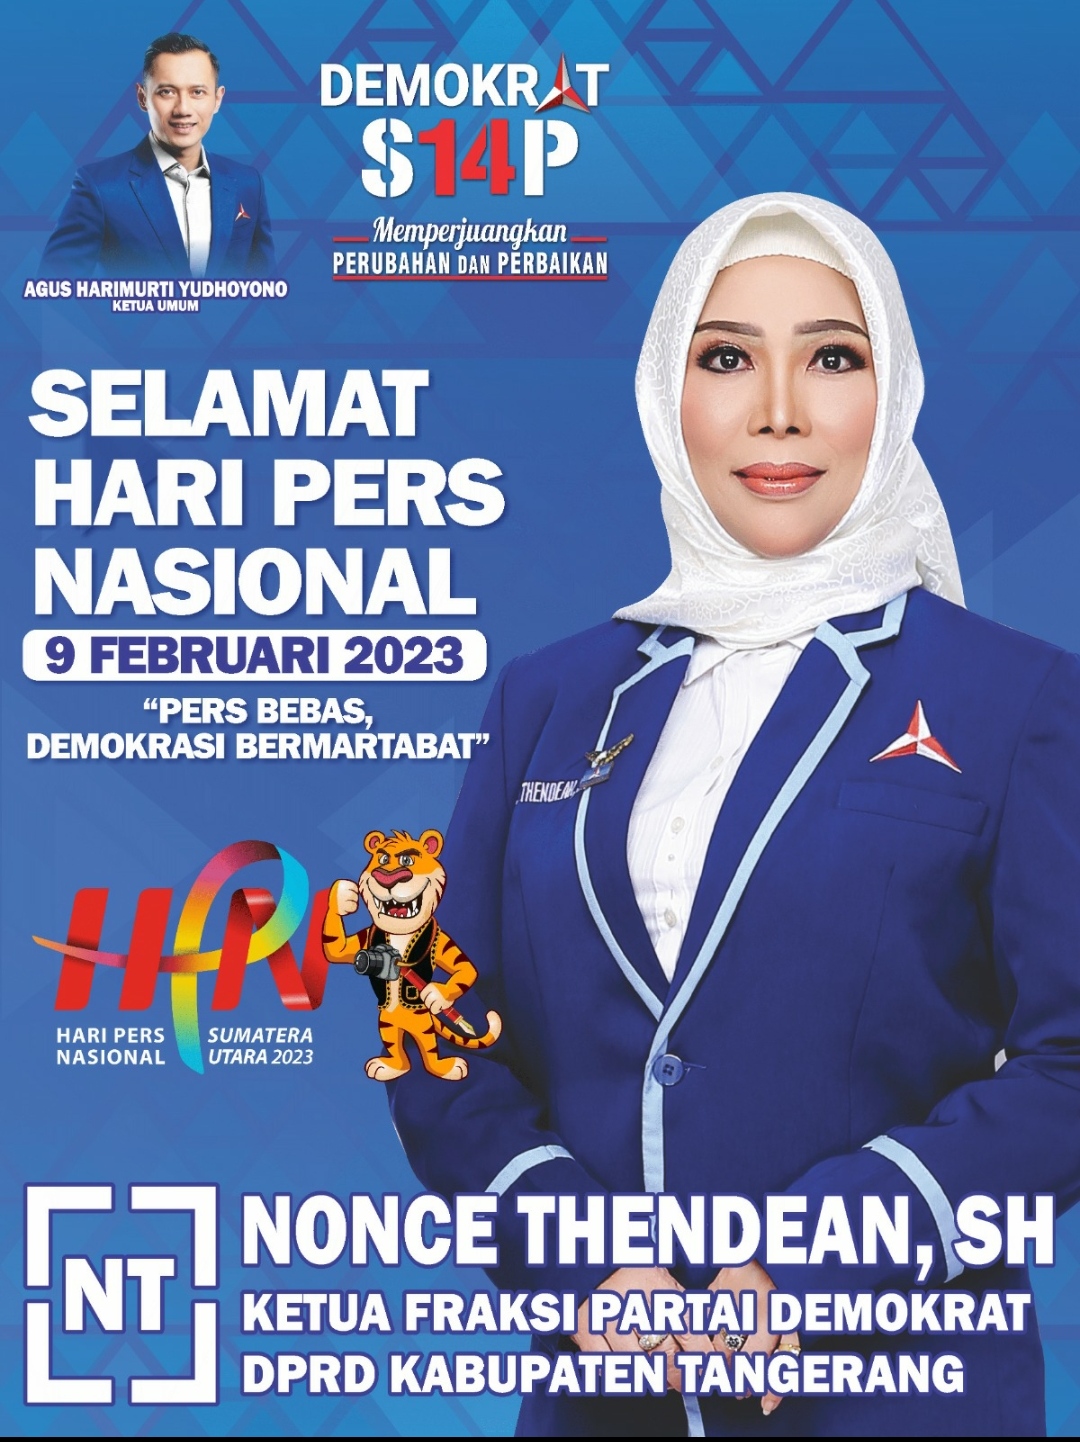 Anggota DPRD Kabupaten Tangerang Nonce Thendean Ucapkan Selamat Hari Pers Nasional 2023